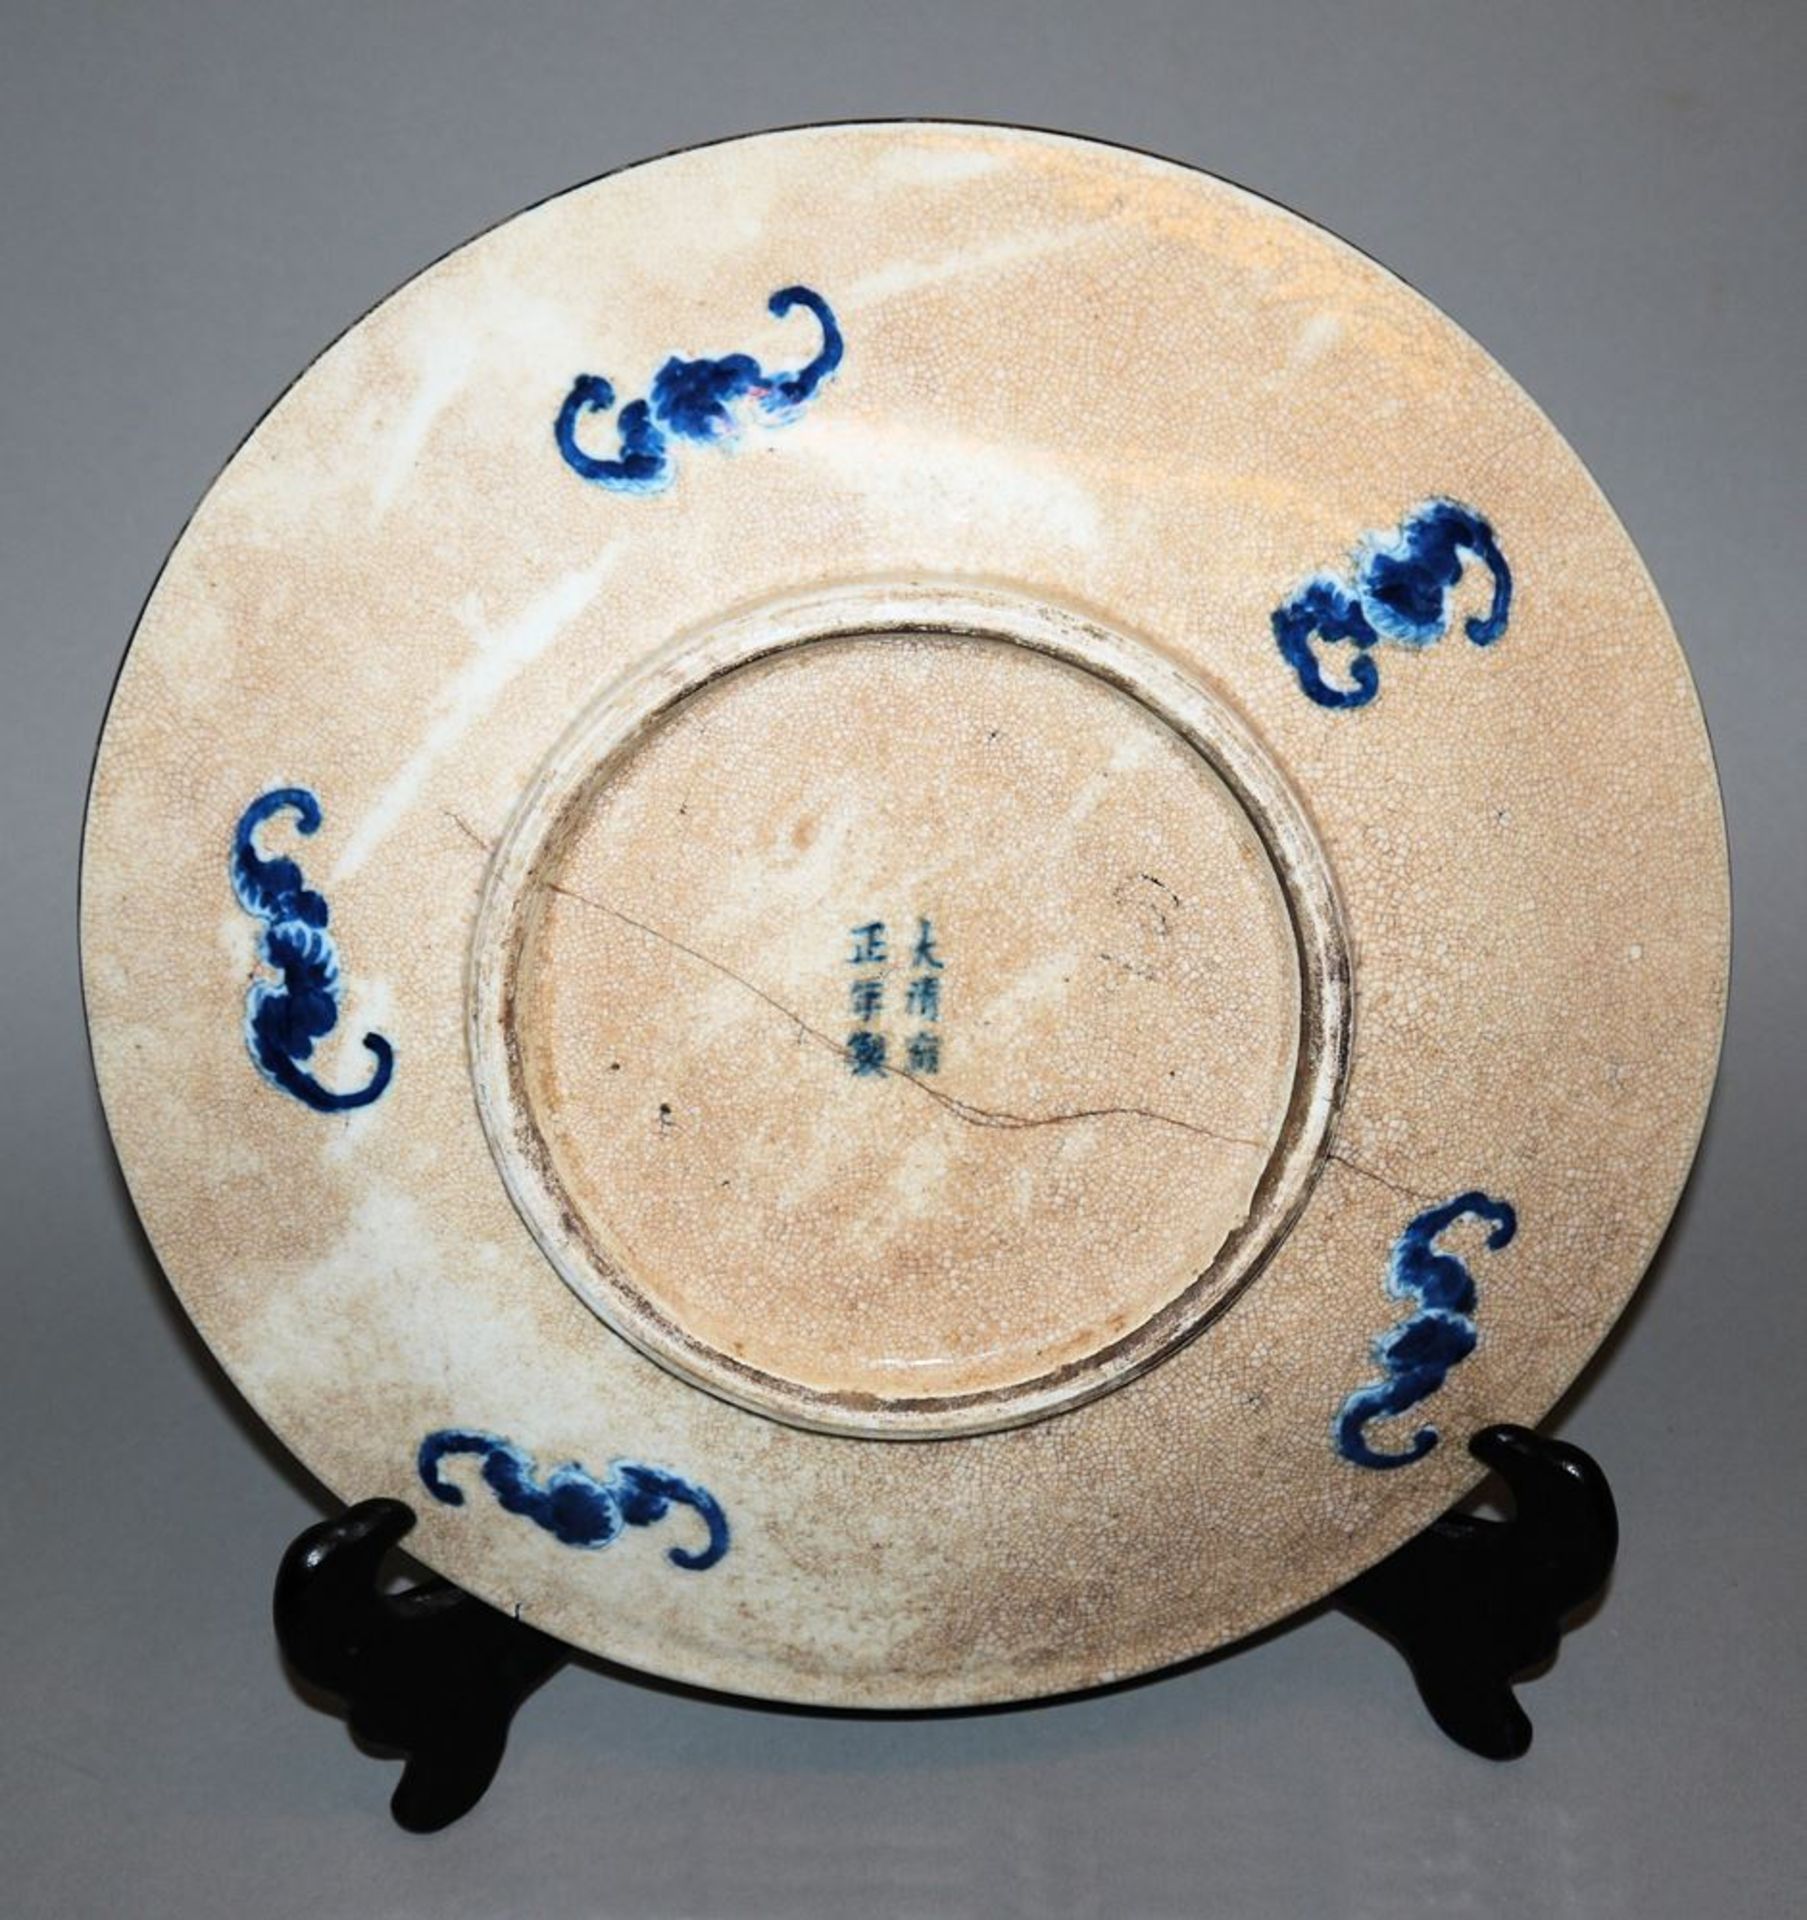 Blauweiß-Teller mit den acht daoistischen Emblemen, späte Qing-Zeit, China 19. Jh. - Image 2 of 2